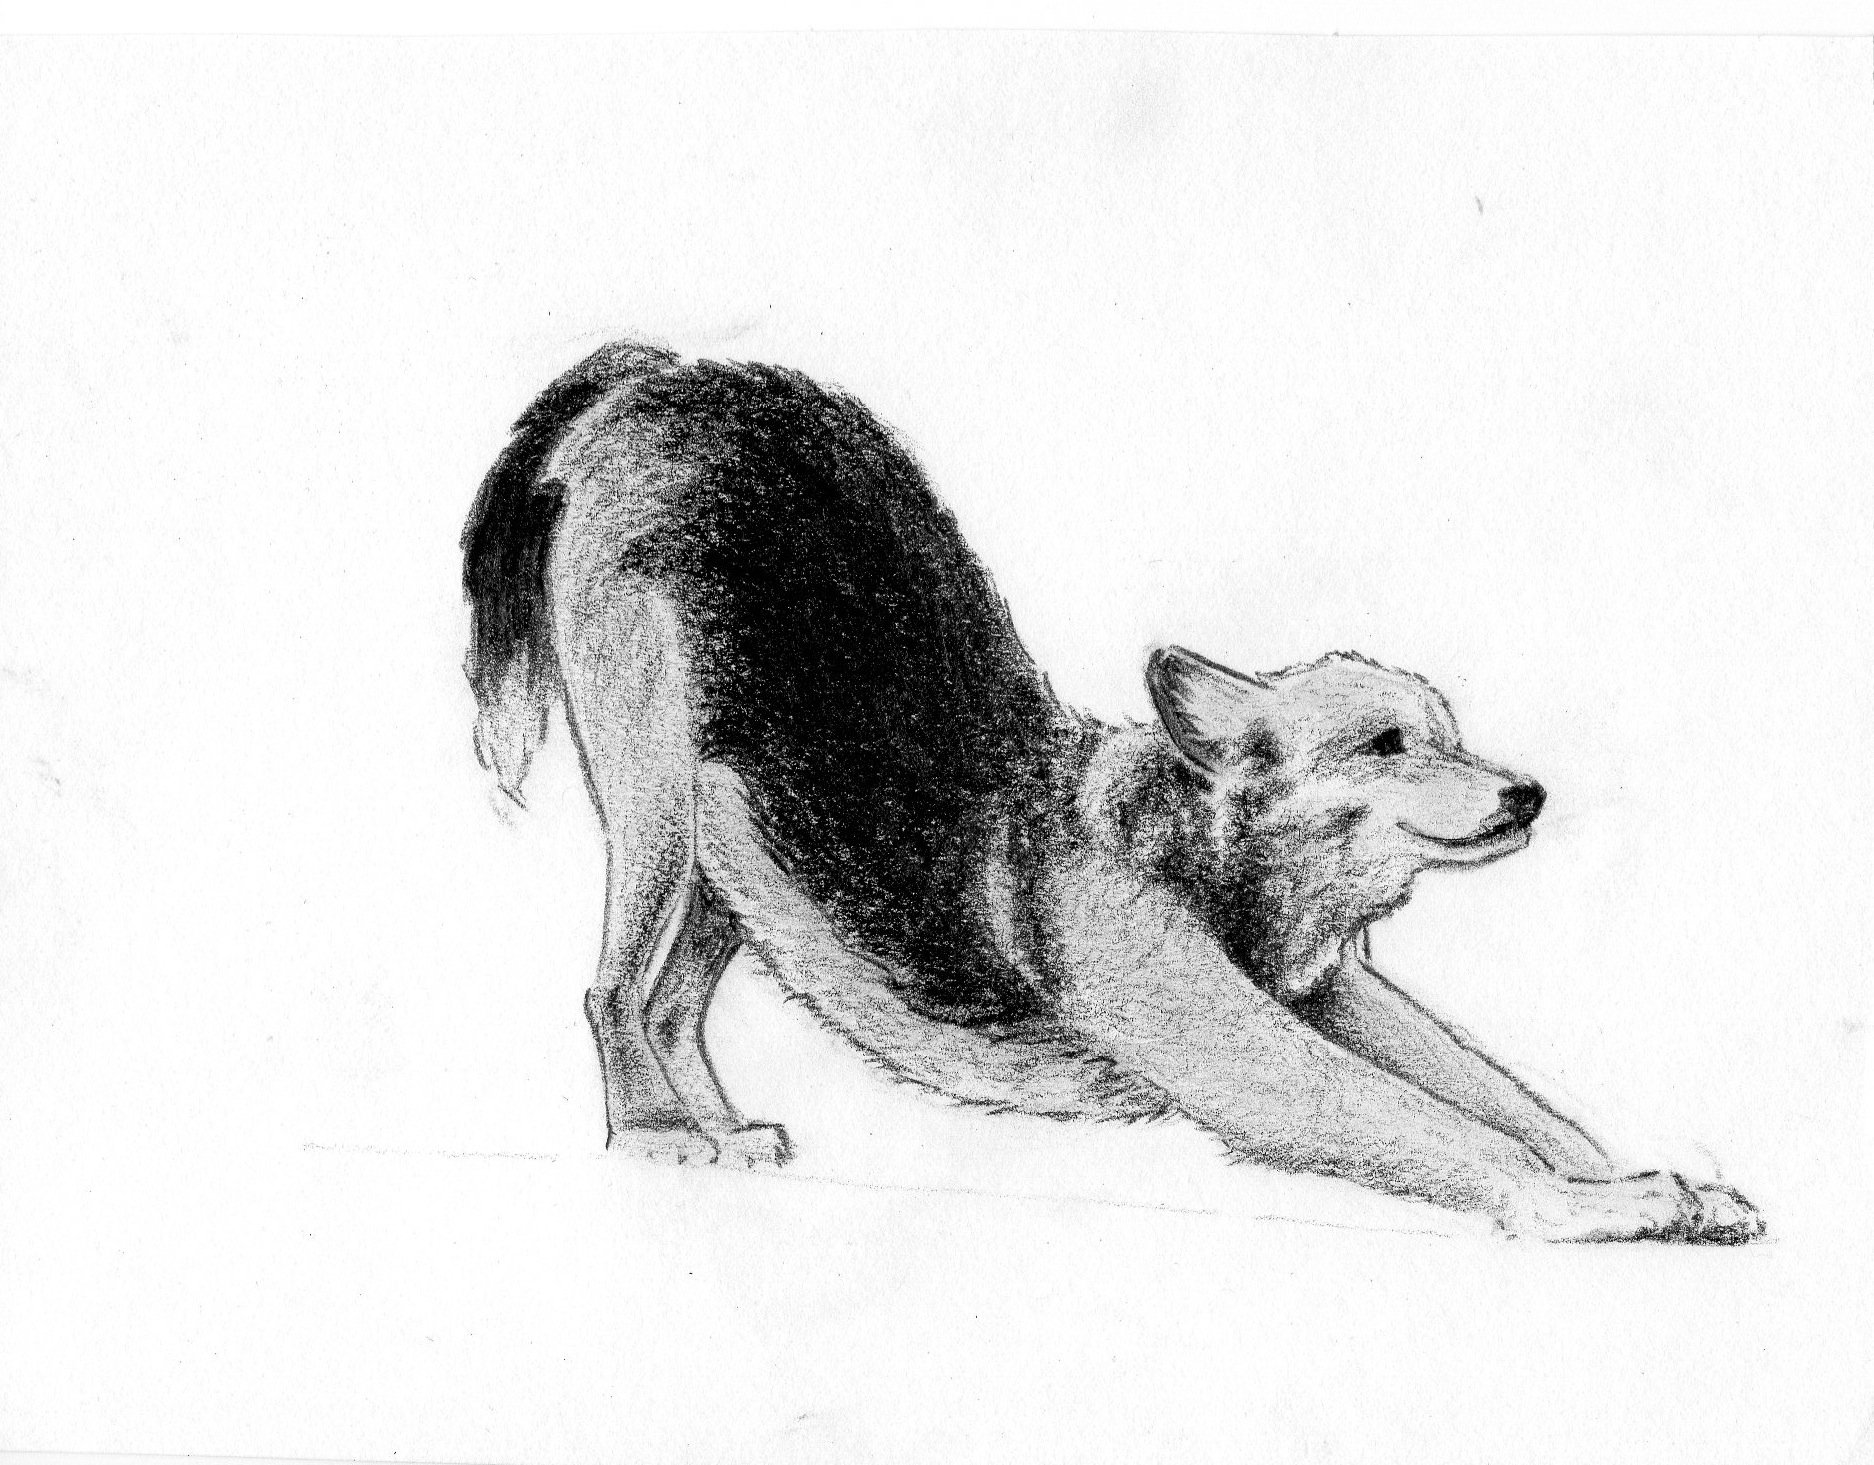 downward_dog____canine_sketch__by_floraredwood_d64mu1q